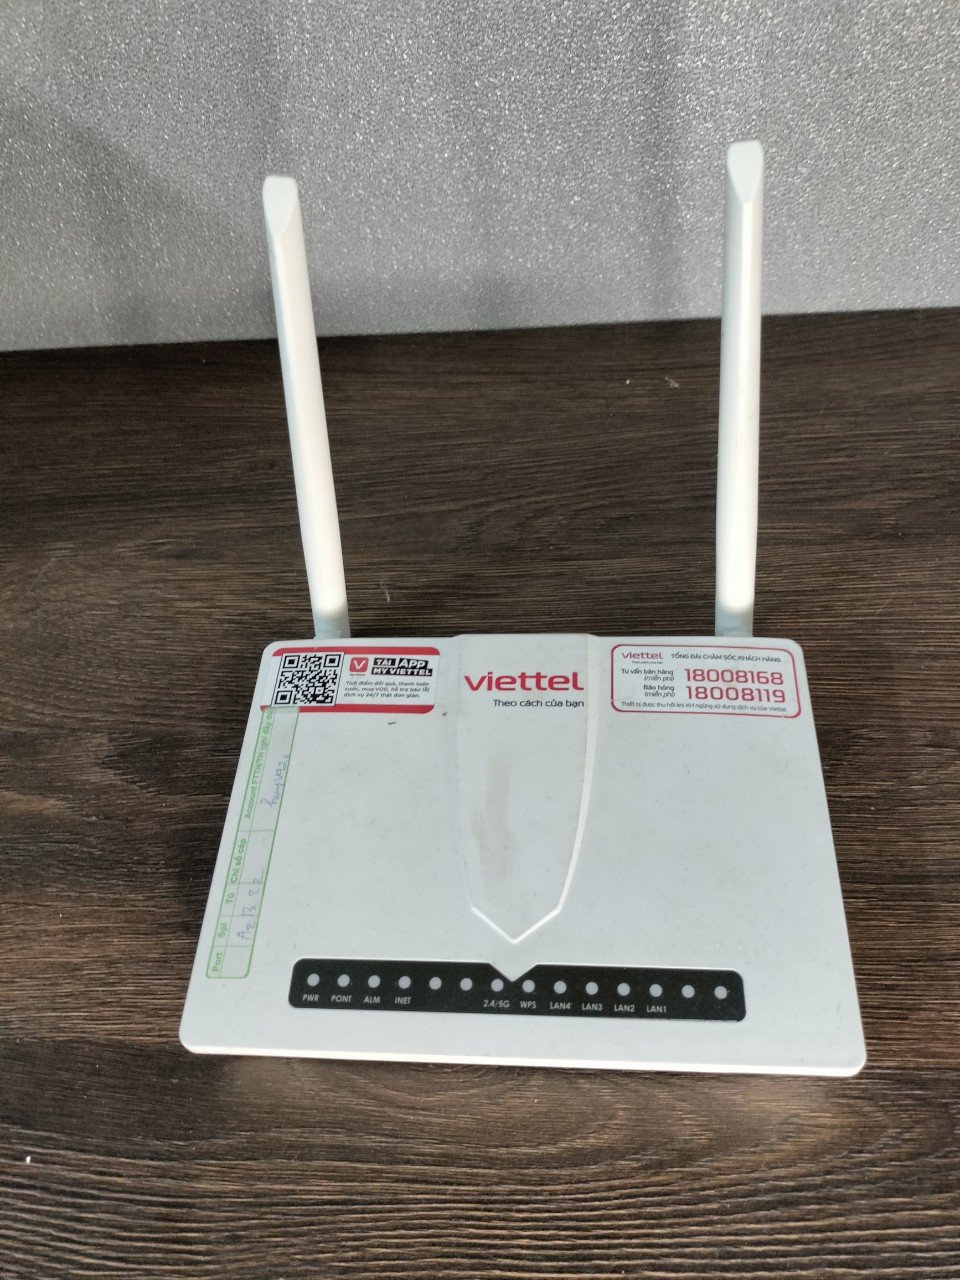 Modem wifi Viettel vG-421WD 2 băng tần đã qua sử dụng còn phát wifi khỏe